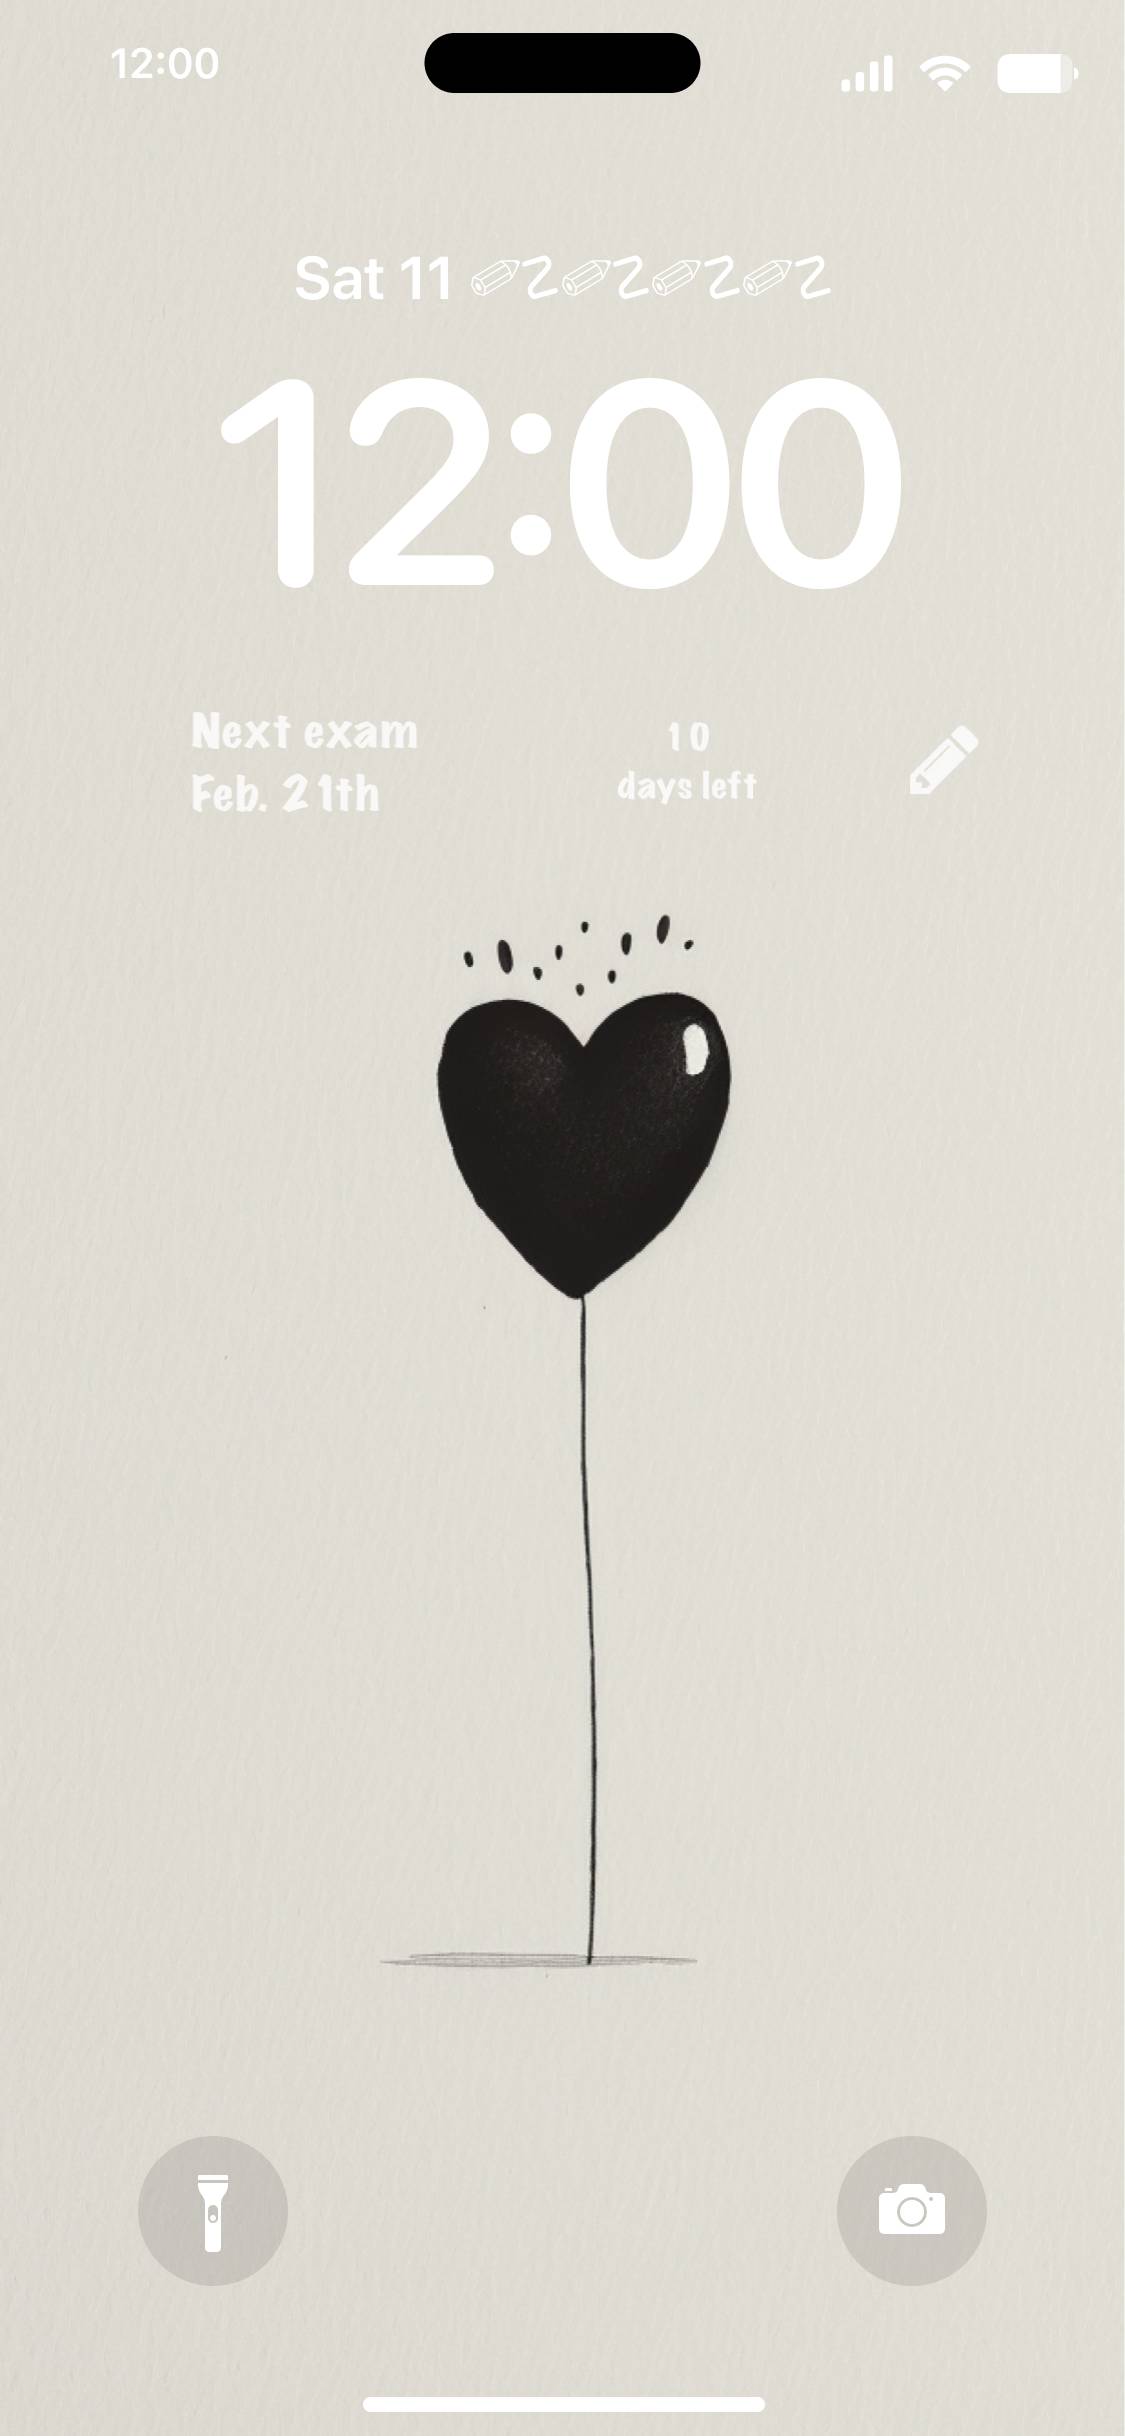 black simple heart balloon Kilid ekranı[MfHj82n9iFVFXkkSYciI]